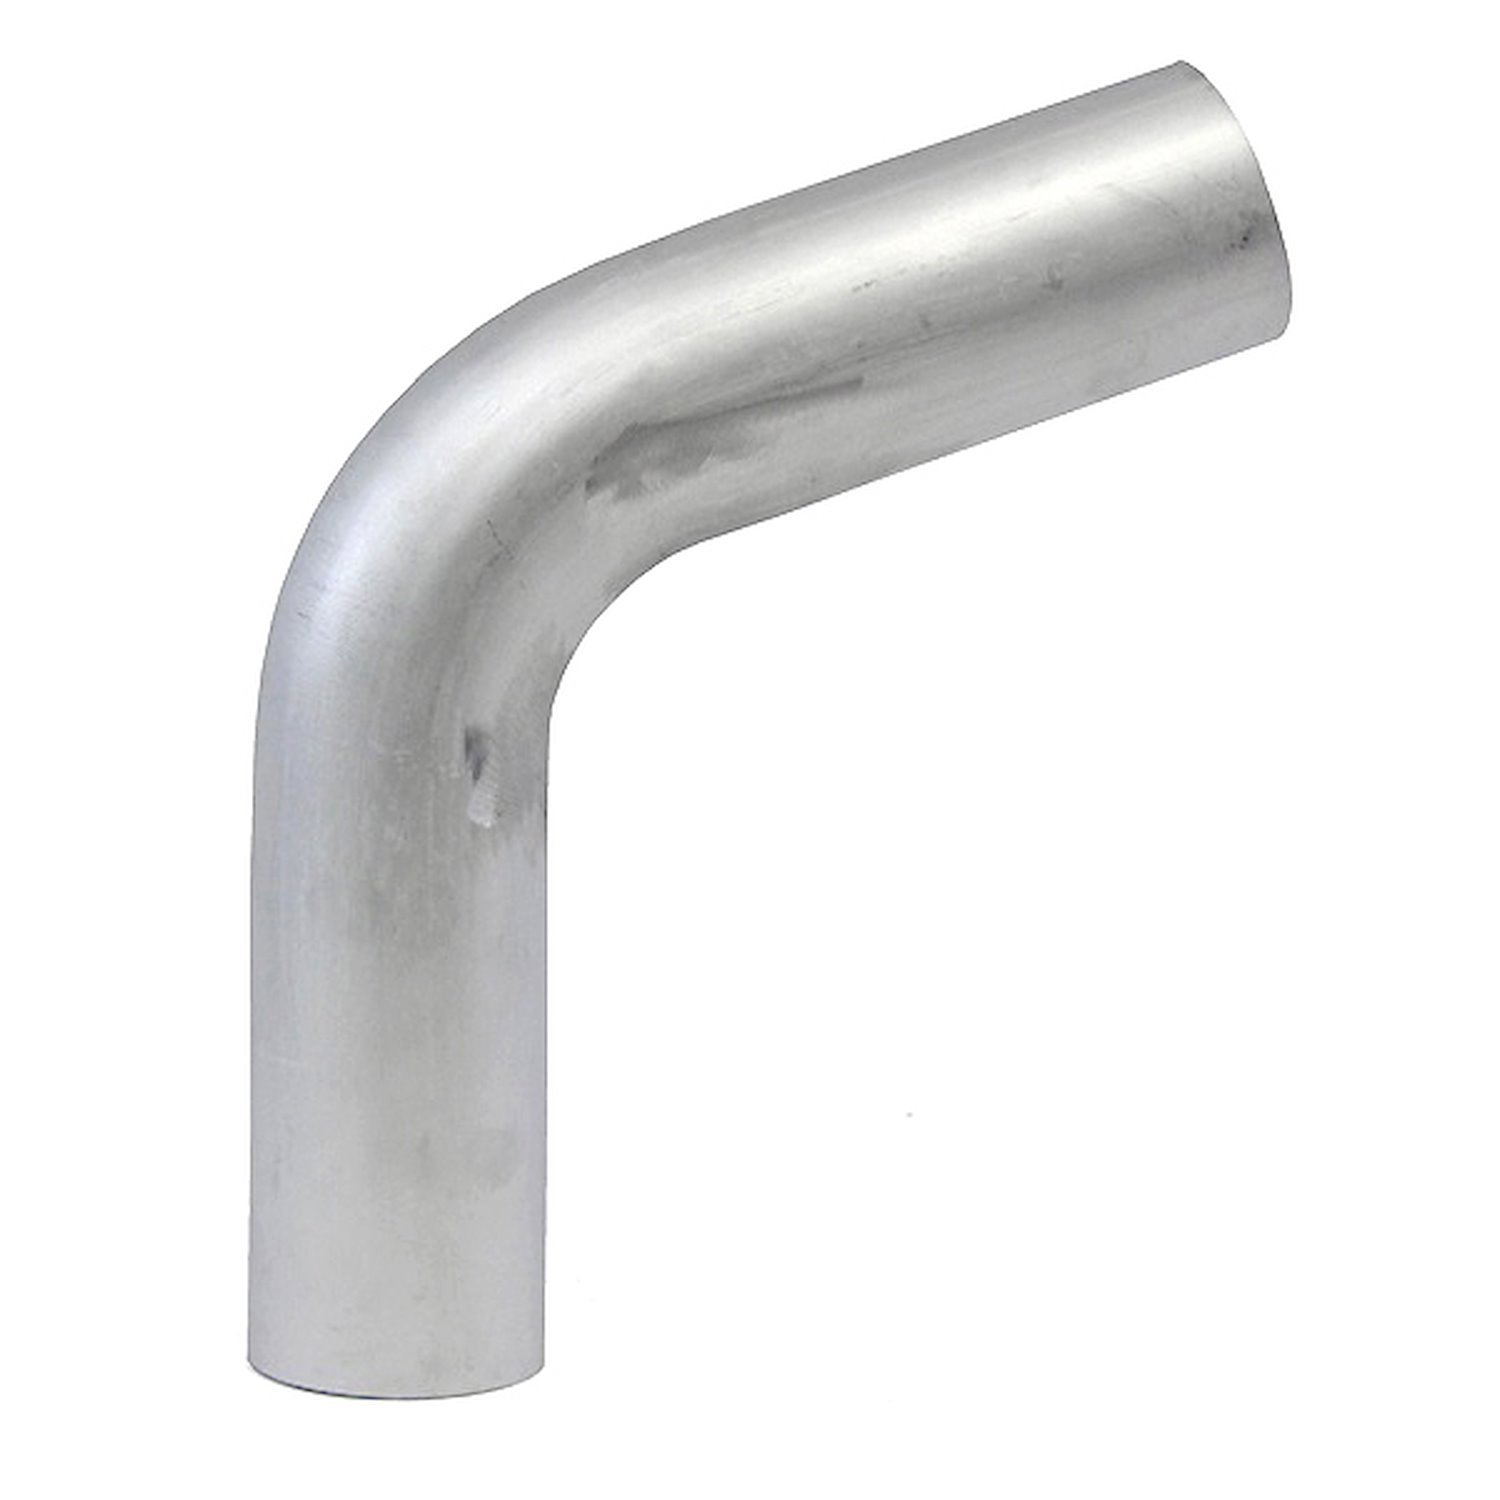 AT70-250-CLR-4 Aluminum Elbow Tube, 6061 Aluminum, 70-Degree Bend Elbow Tubing, 2-1/2 in. OD, Large Radius, 4 in. CLR